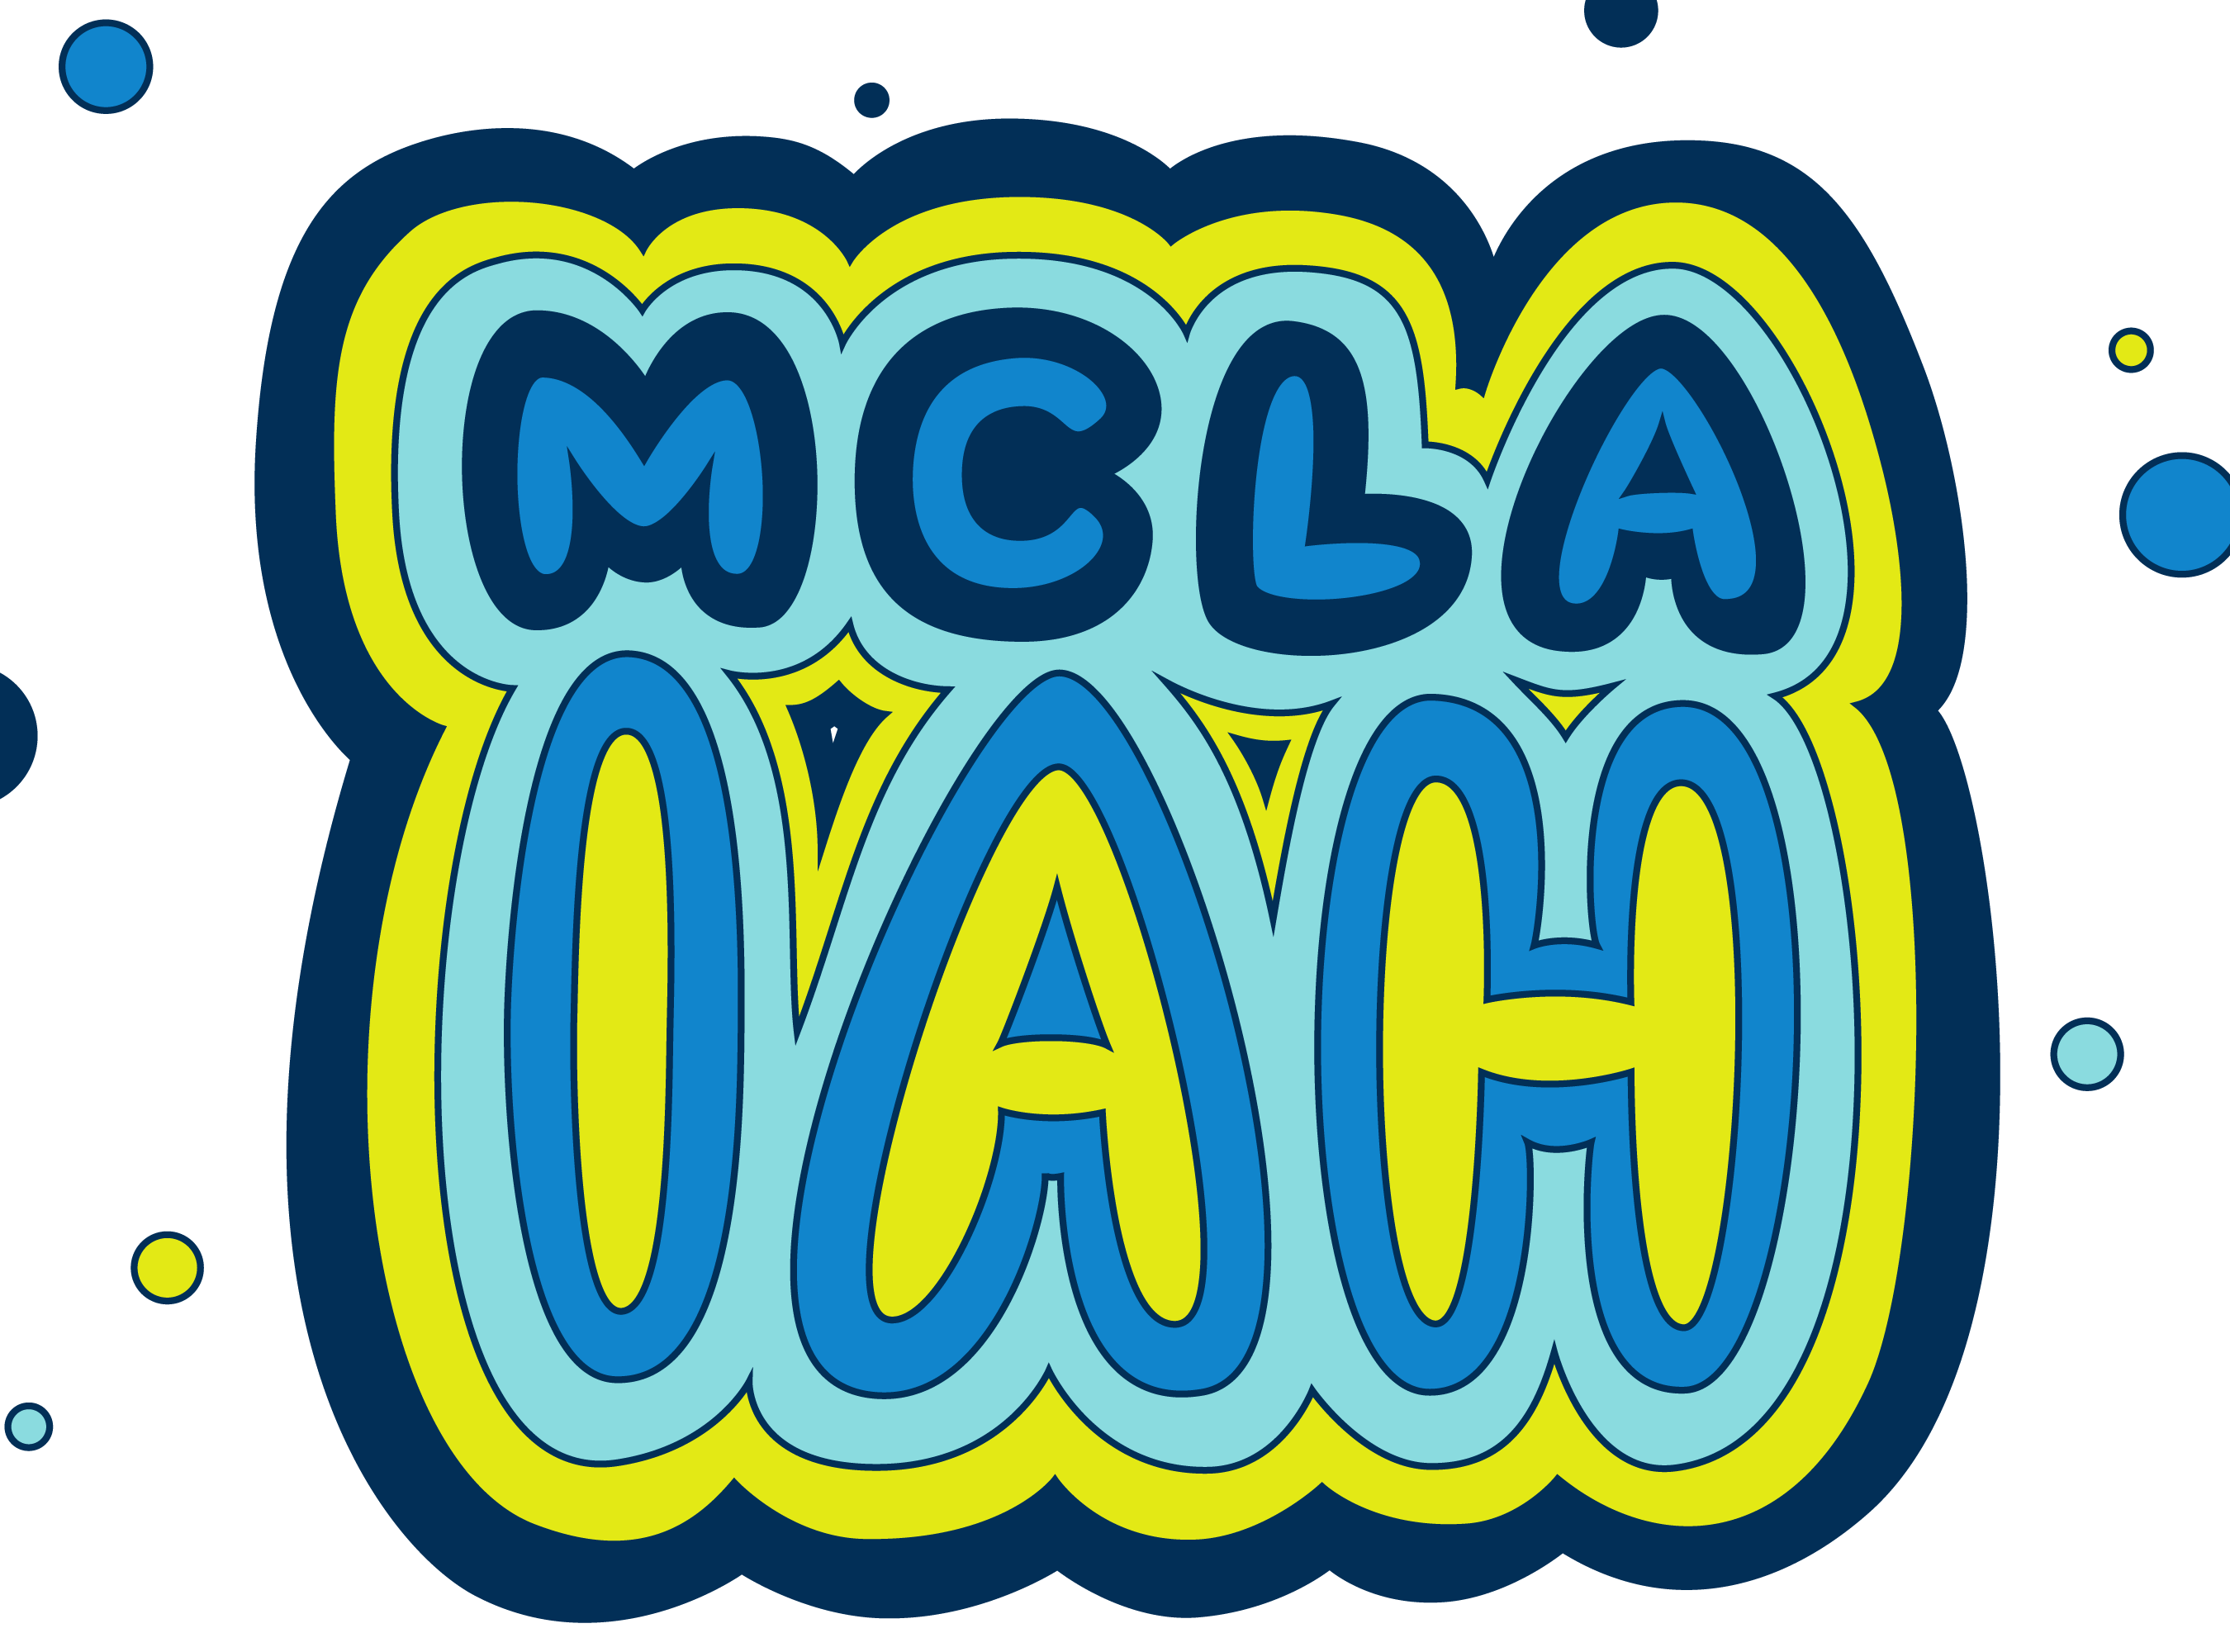 MCLA IAH written in bubble letters in the official MCLA color scheme